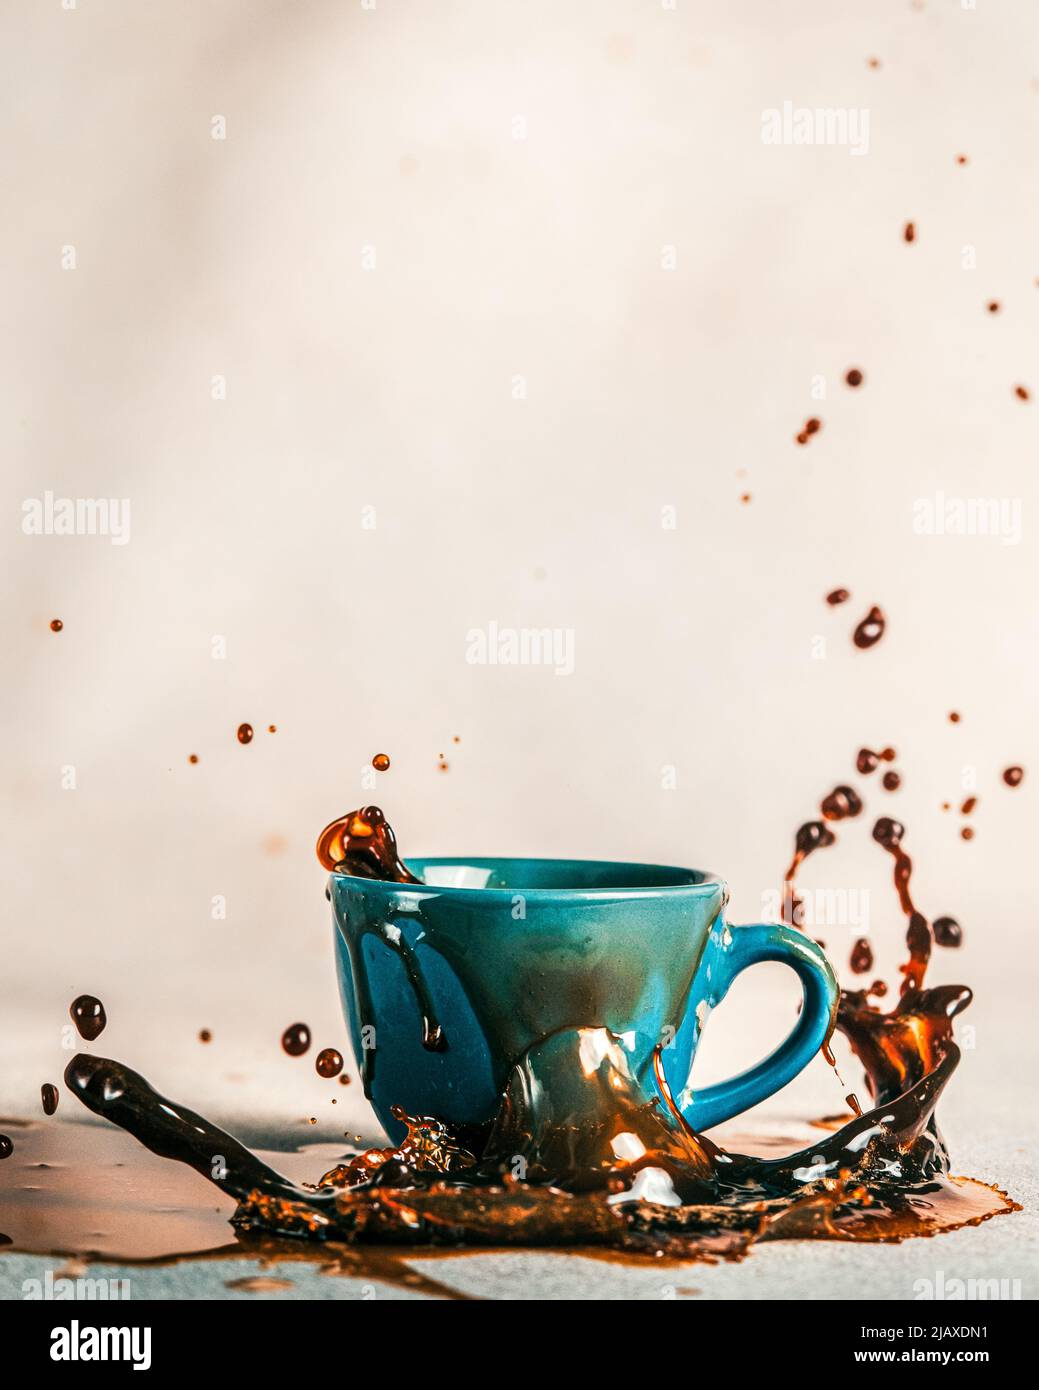 coffee splash on white table Stock Photo